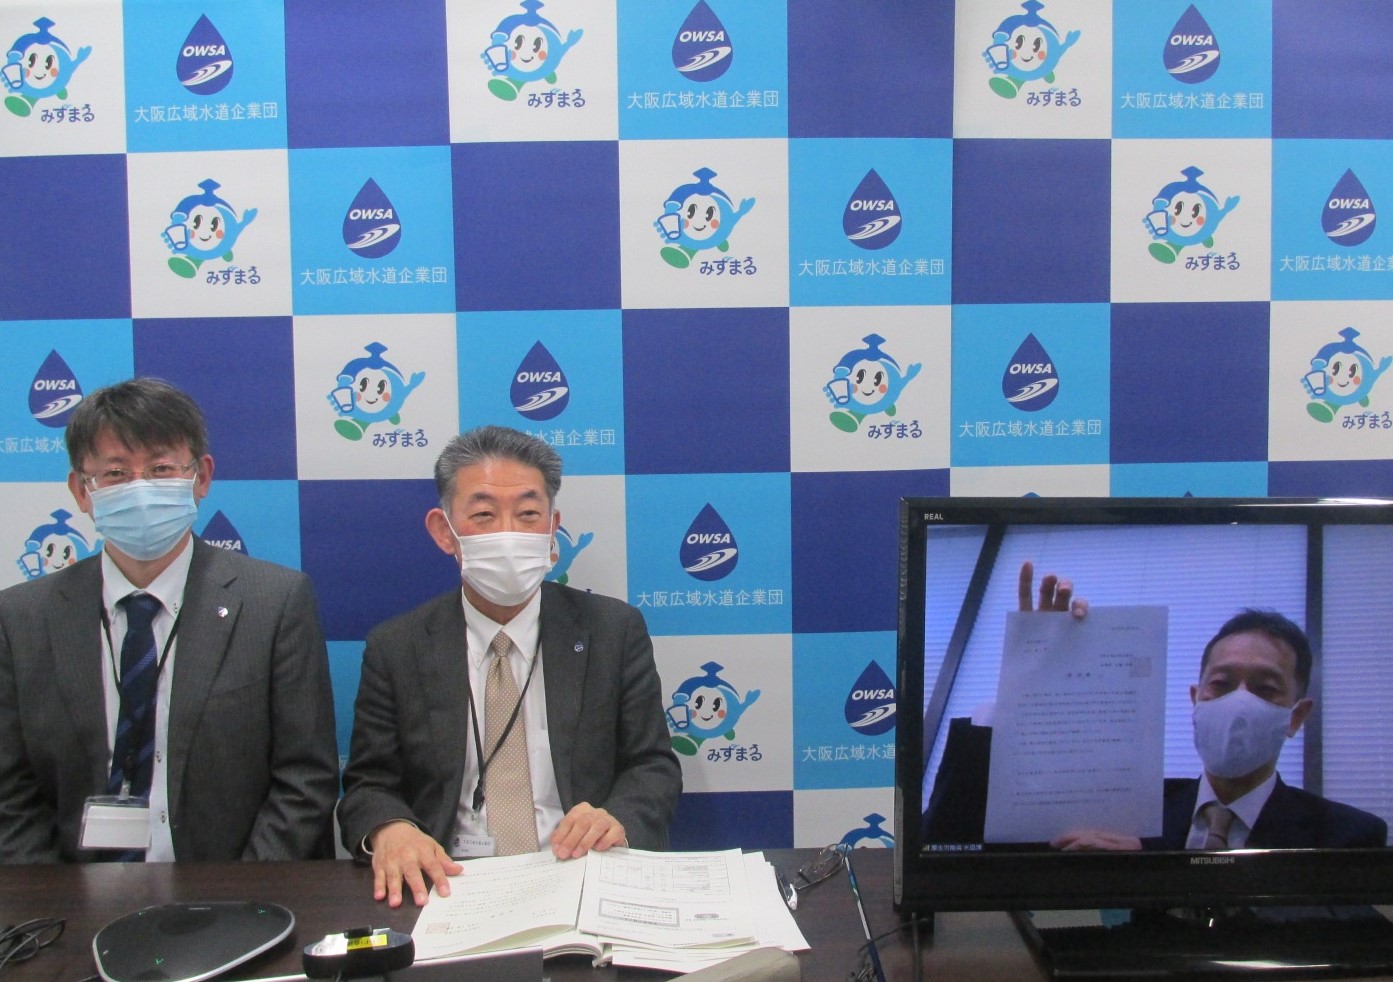 吉田副企業長と中田部長が、熊谷課長に要望書を渡している写真